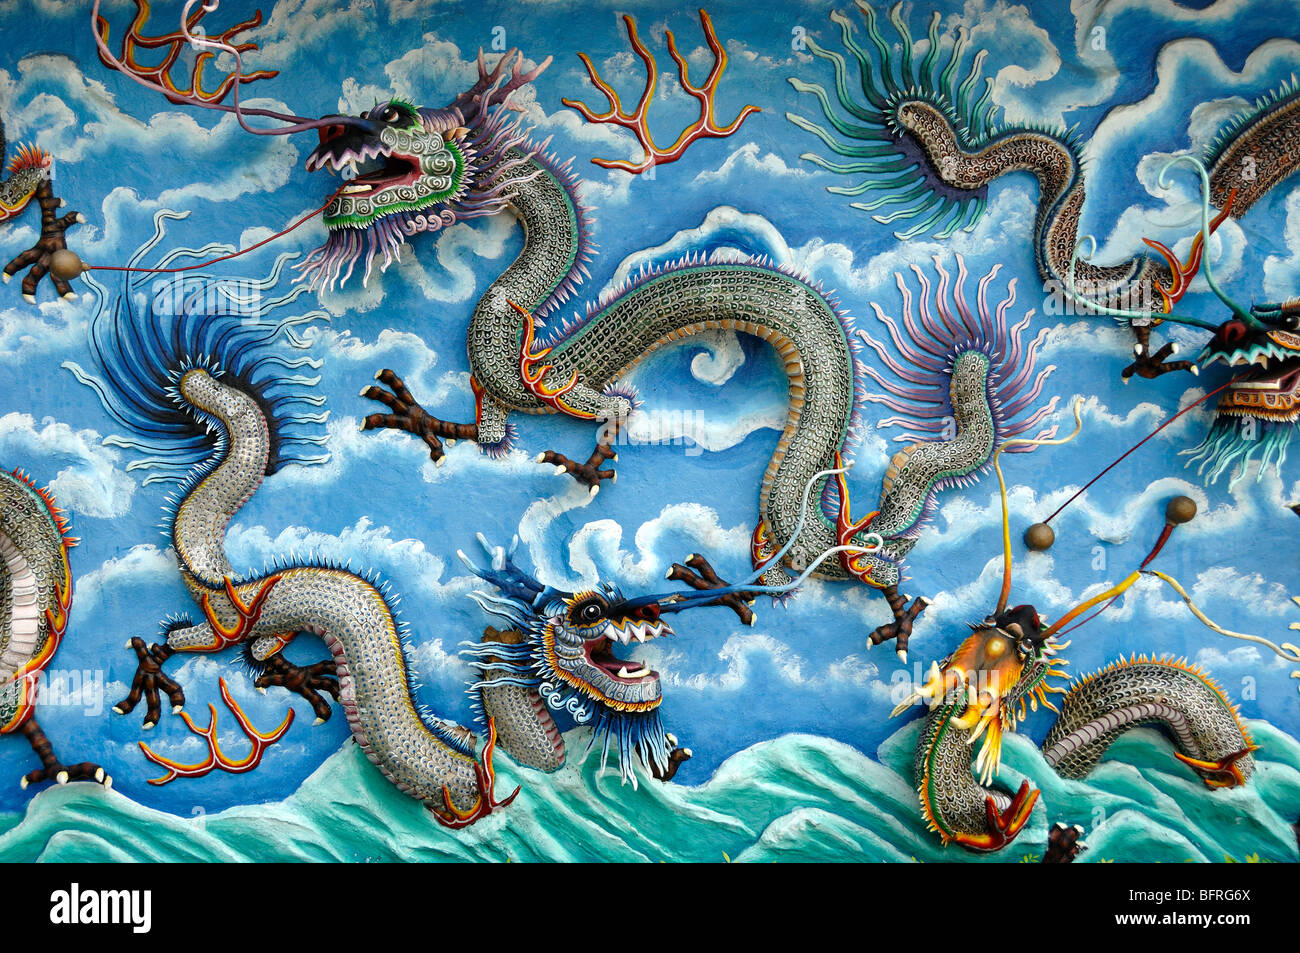 Mur Dragon dragons chinois avec le baume du Tigre chinois, jardins à thème, Singapour Banque D'Images